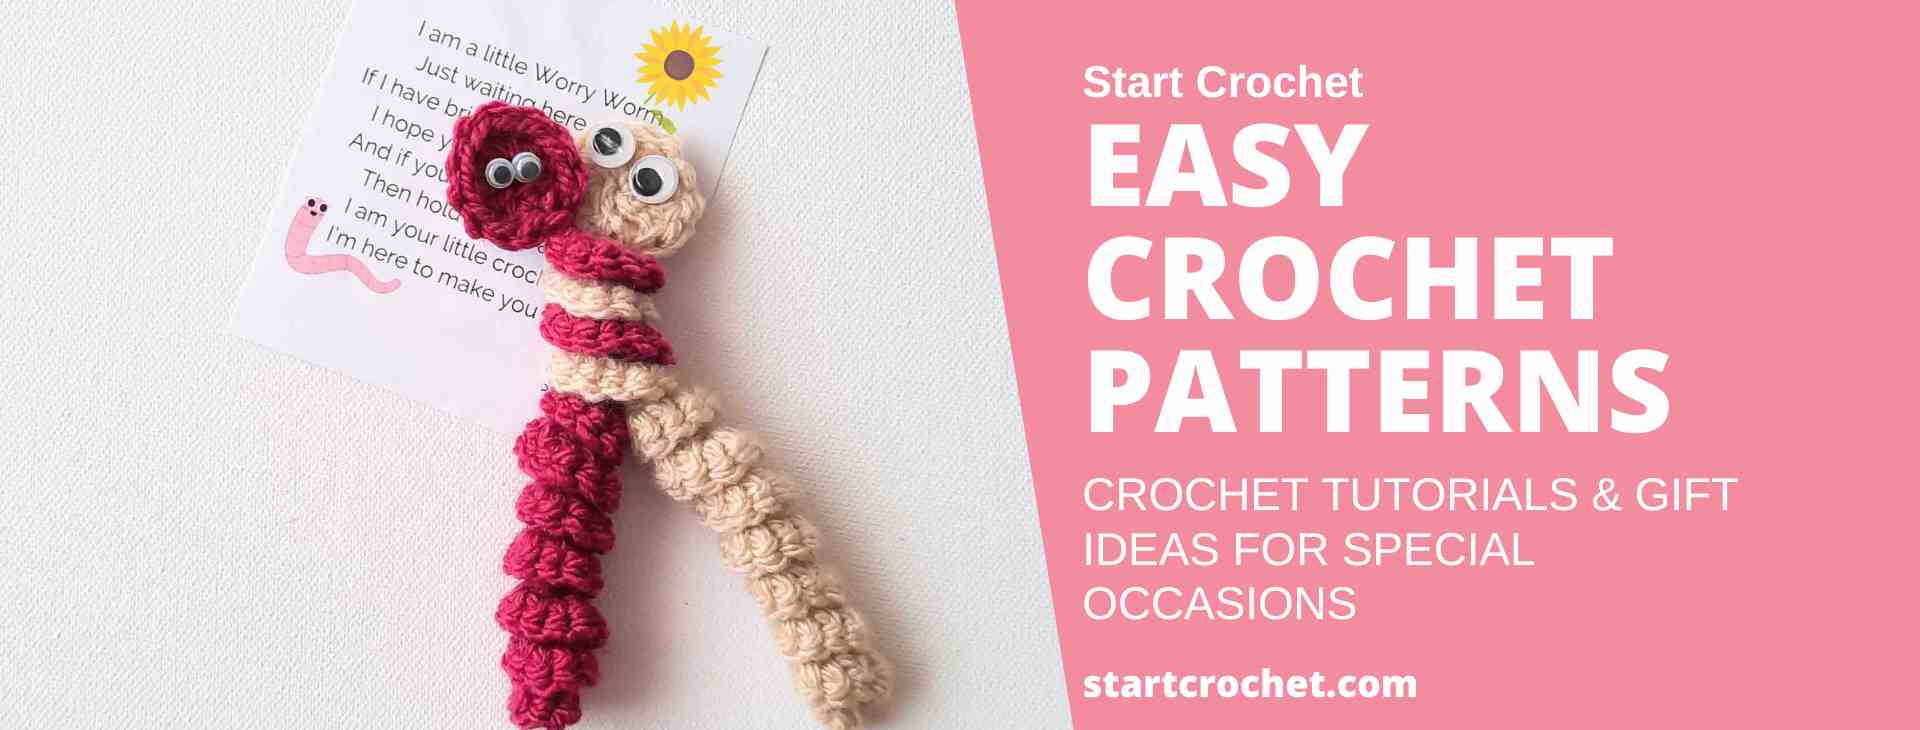 Start Crochet Blog